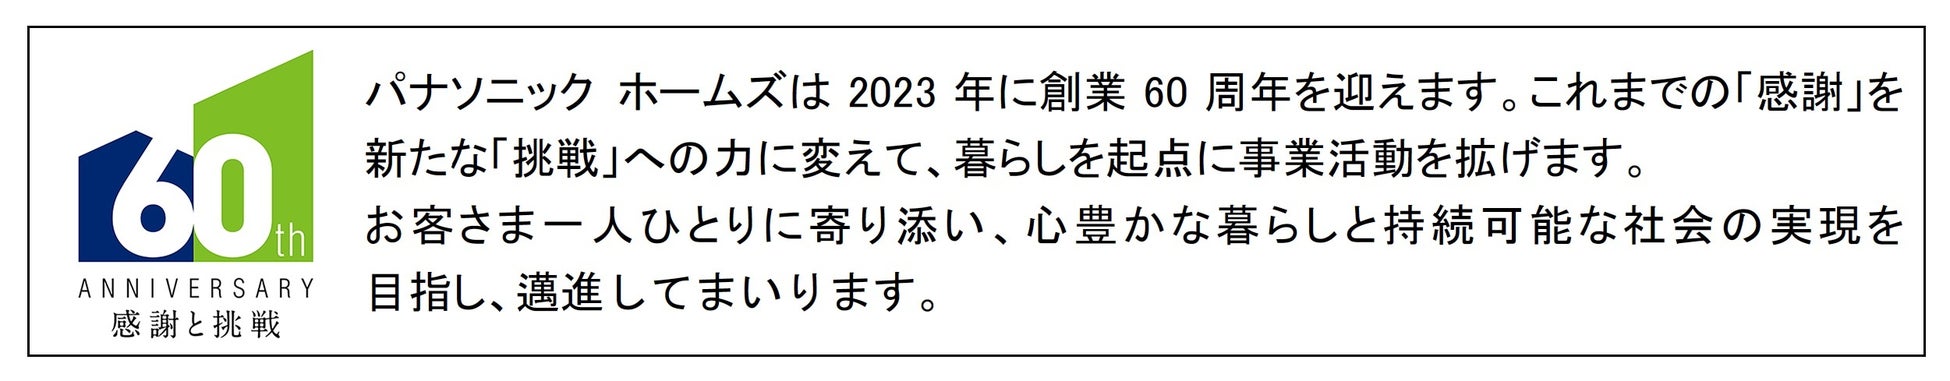 2023年 「住まいに対する意向調査」を実施。関東大震災から100年、耐震性を最重要視のサブ画像1